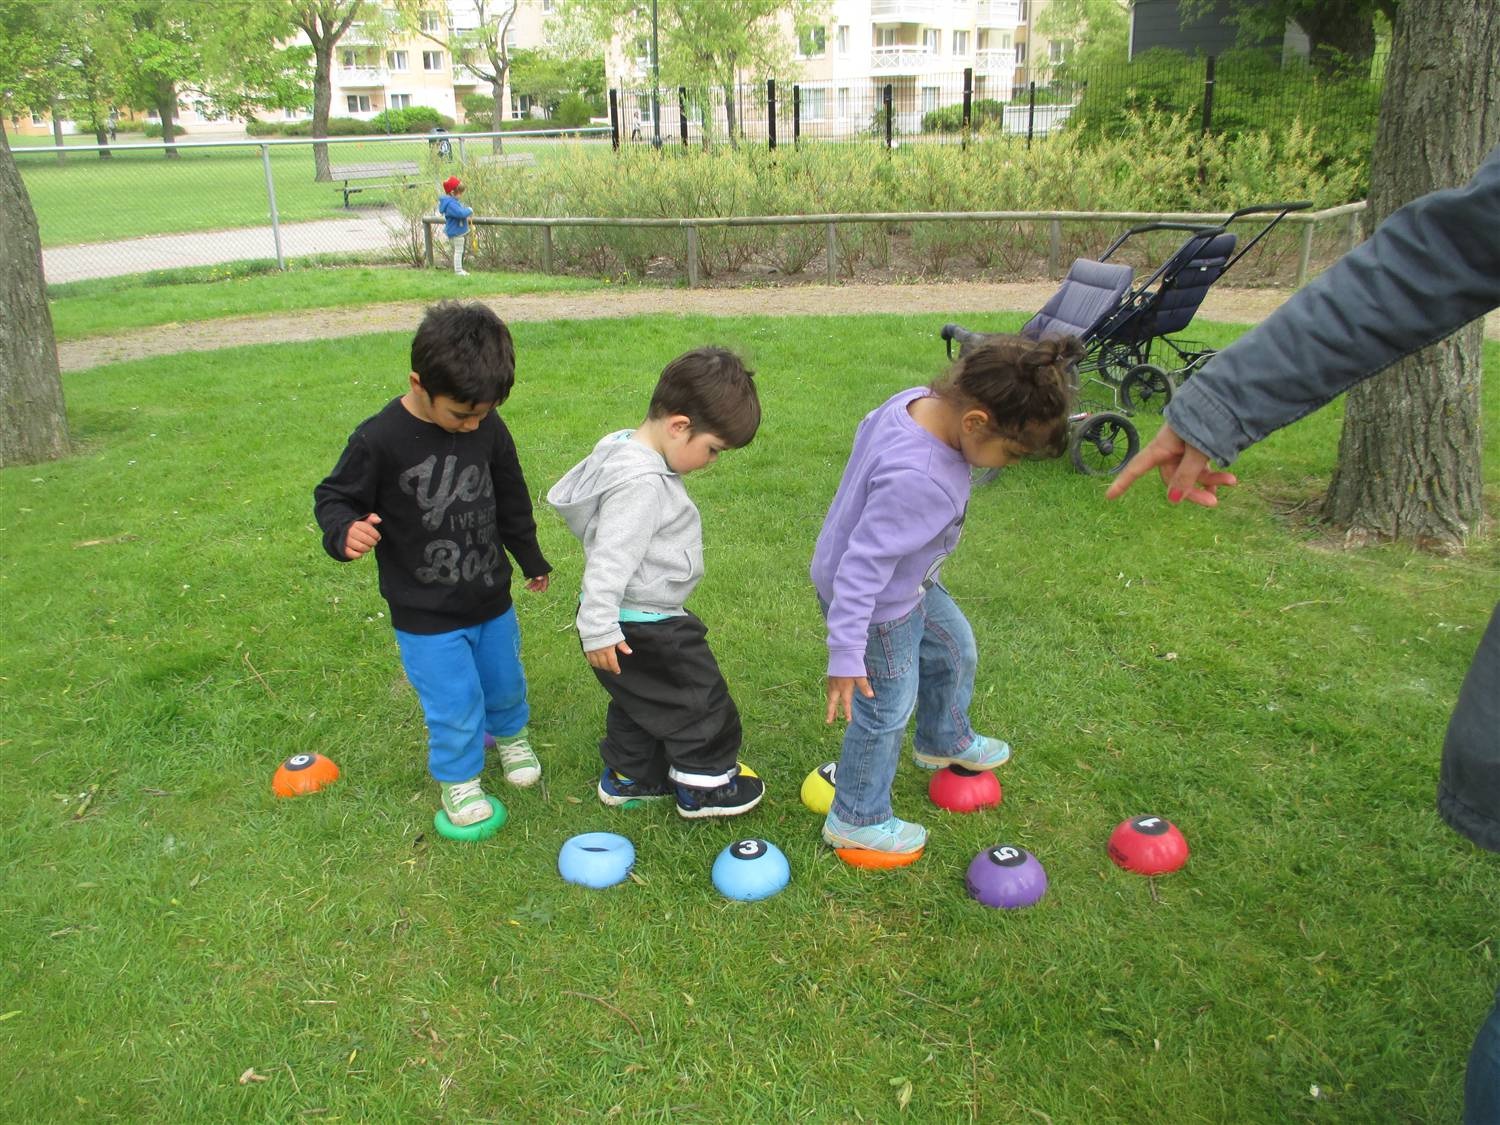 och balans plattor används. Förskolan har en utemljö som nbjuder tll lek och rörelse på olka sätt, såsom sprnga, klättra, cykla och balansera.